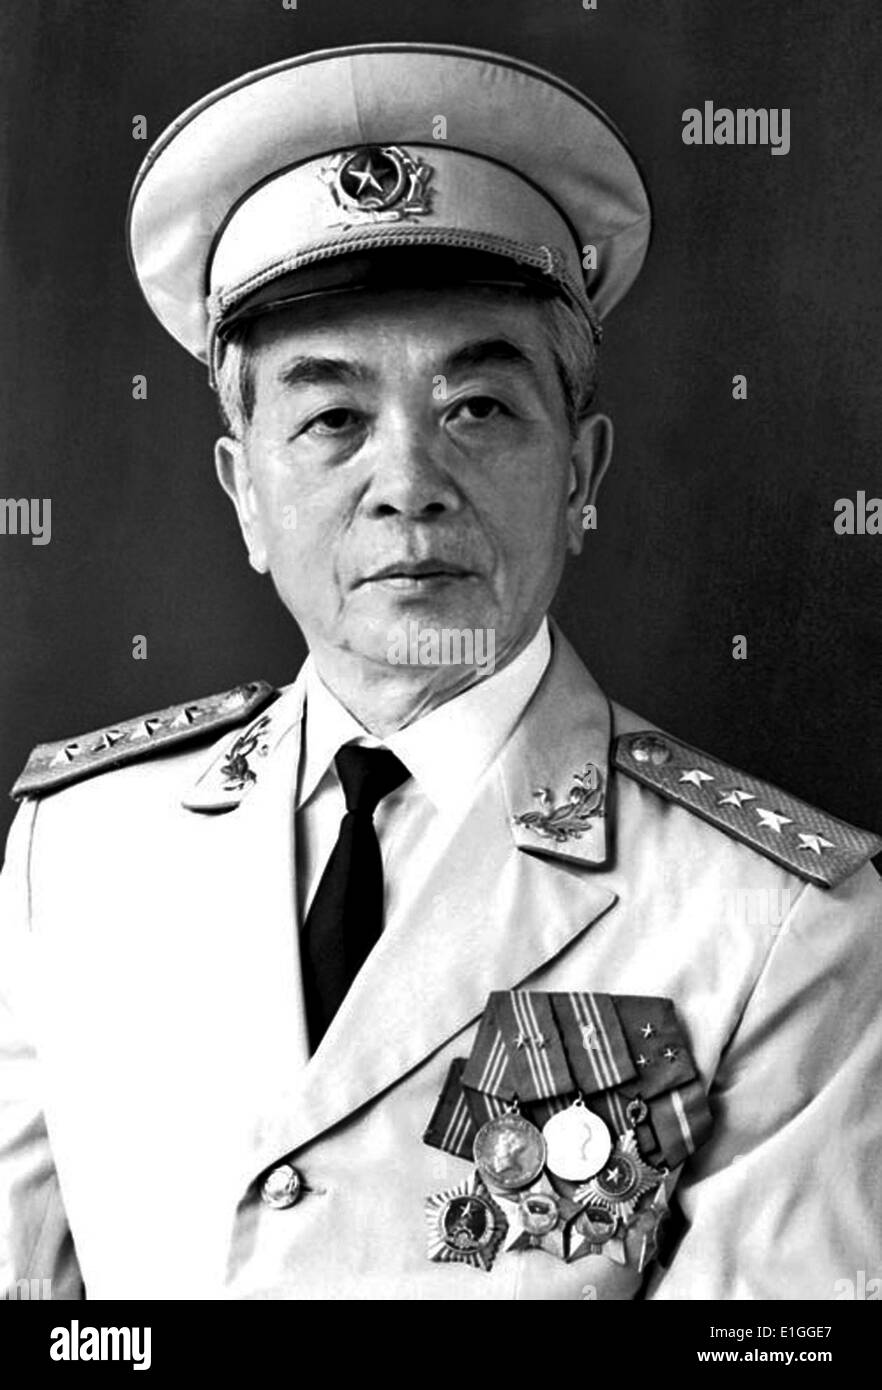 Võ Nguyên Giáp 1911 - 4 ottobre 2013) in generale il Vietnam Esercito del popolo e politico. Egli per primo è cresciuto a rilievo durante la II Guerra Mondiale, dove ha servito come capo militare del Viet Minh resistenza contro l'occupazione giapponese del Vietnam. Giáp era un comandante principale in due guerre: la prima guerra in Indocina (1946-54) e la guerra del Vietnam (1960-1975). Ha partecipato ai seguenti storicamente significativo battaglie: Lạng Sơn (1950), Hòa Bình (1951-52), Điện Biên Phủ (1954), il Tết offensivo (1968), l'offensiva di Pasqua (1972), e la finale di Ho Chi Minh campagna (1975). Foto Stock